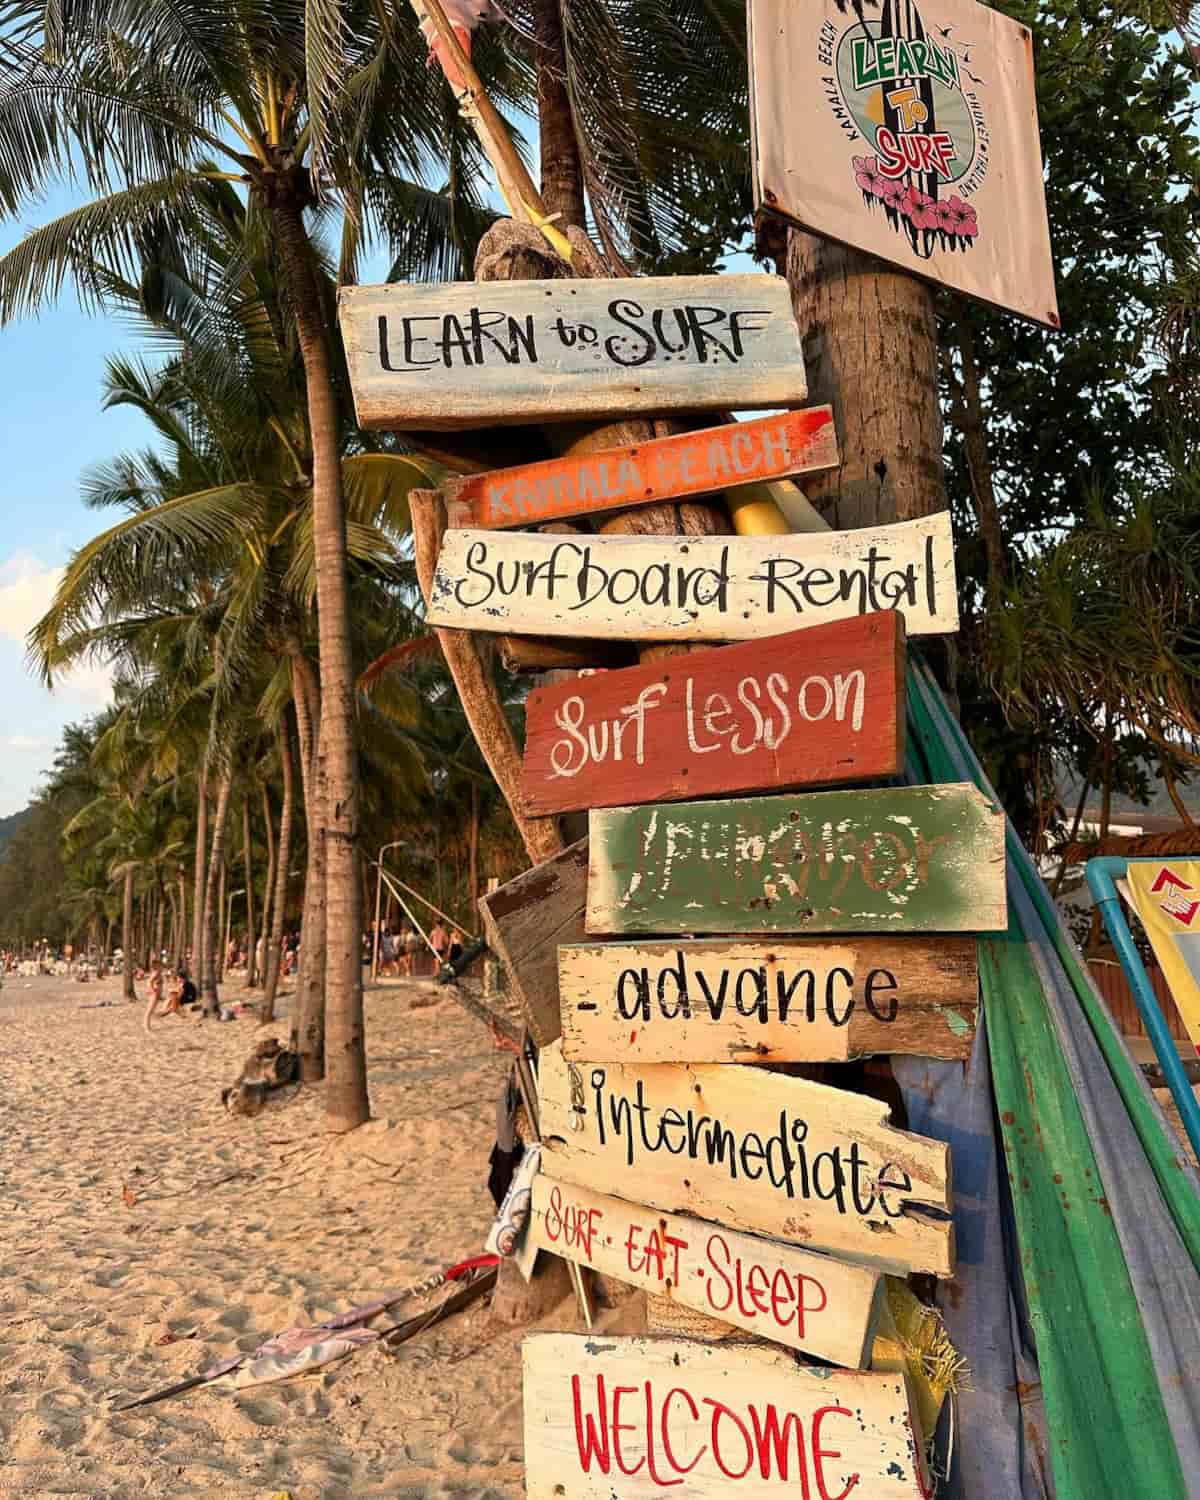 Kamala Beach Phuket